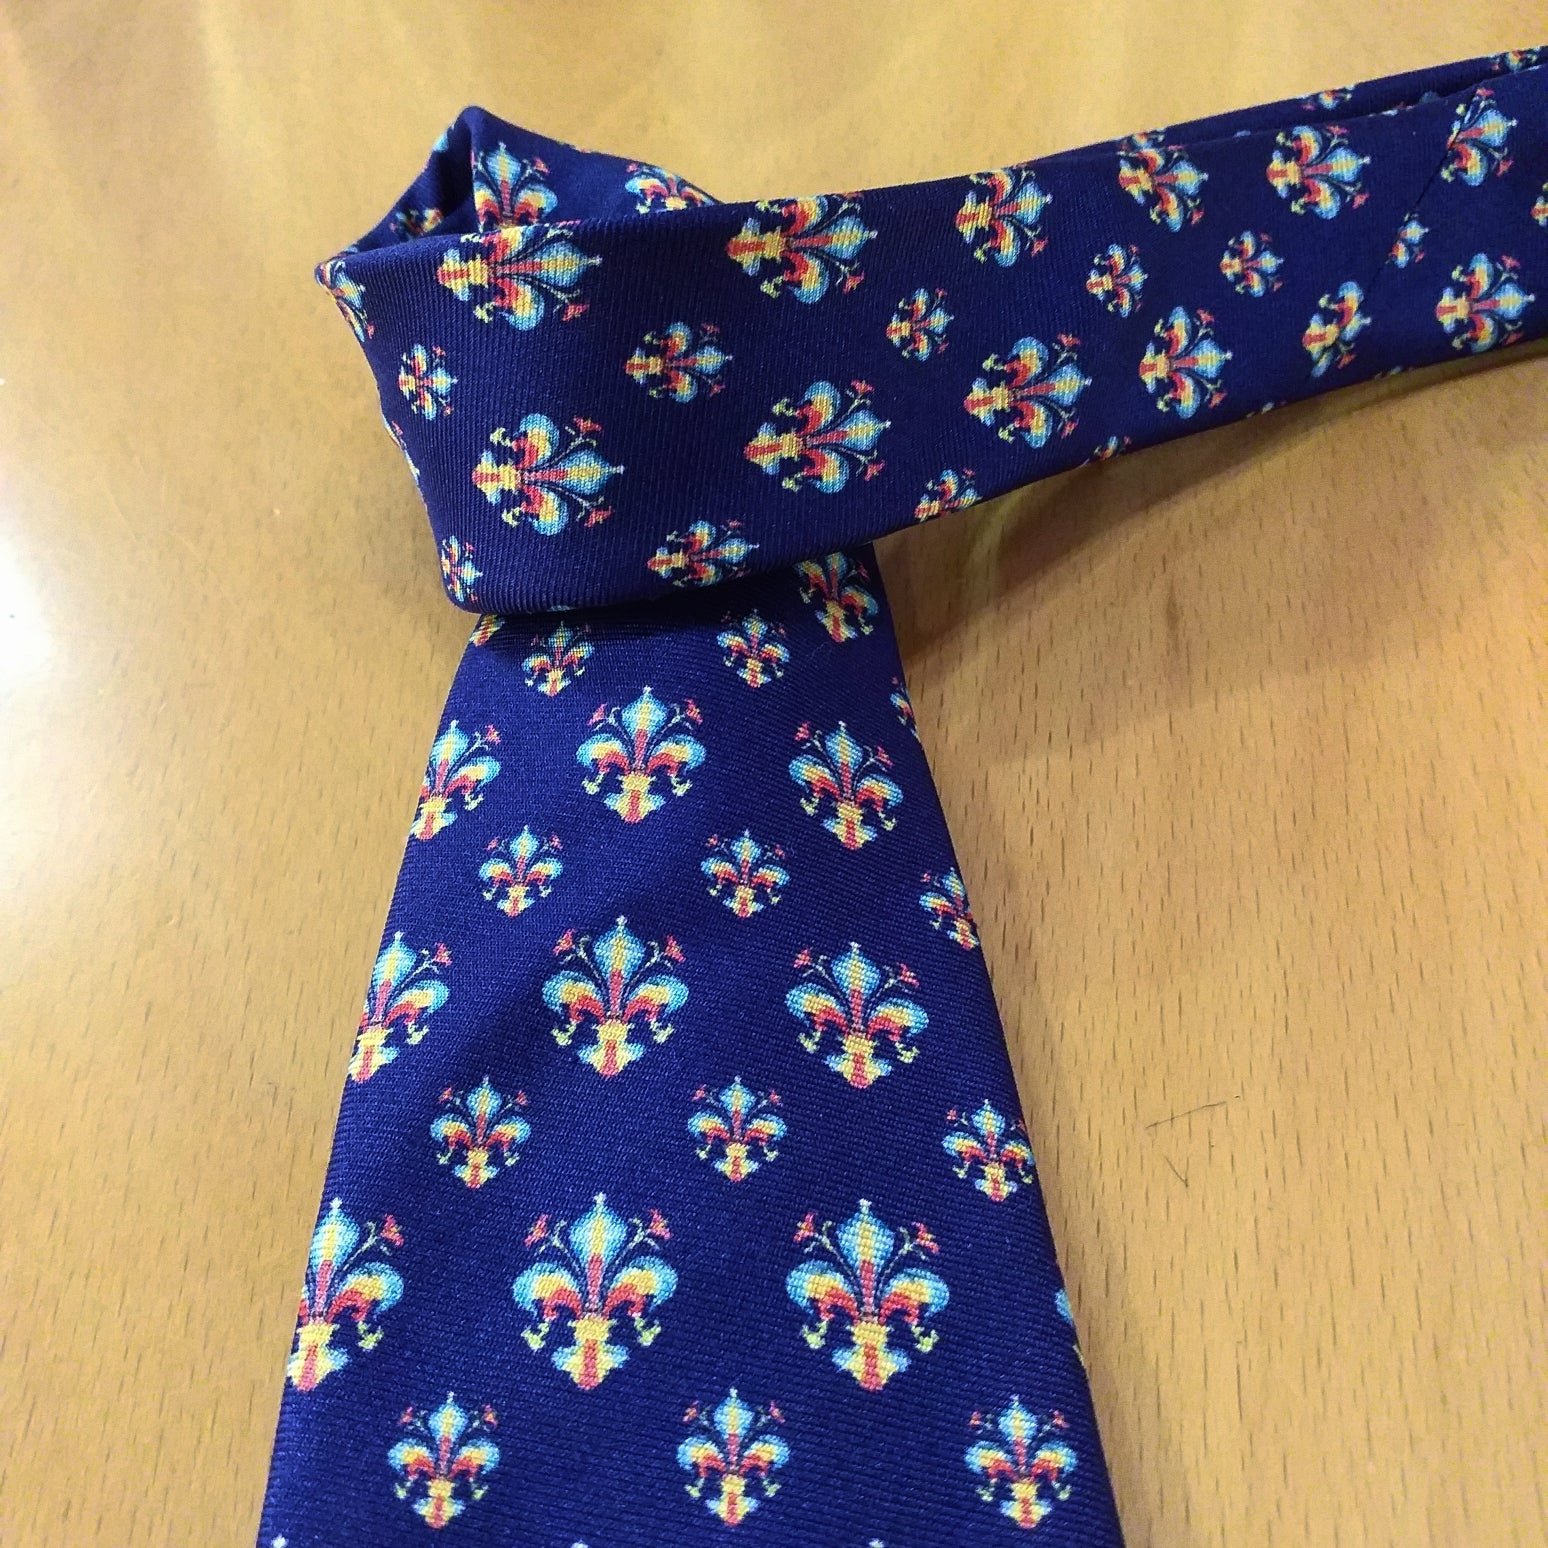 Cravatta con il giglio di Firenze ⚜️⚜️⚜️(multicolor/multicolored) , simbolo dei medici ⚜️( tie with the lily of Florence, symbol of the Medici family)